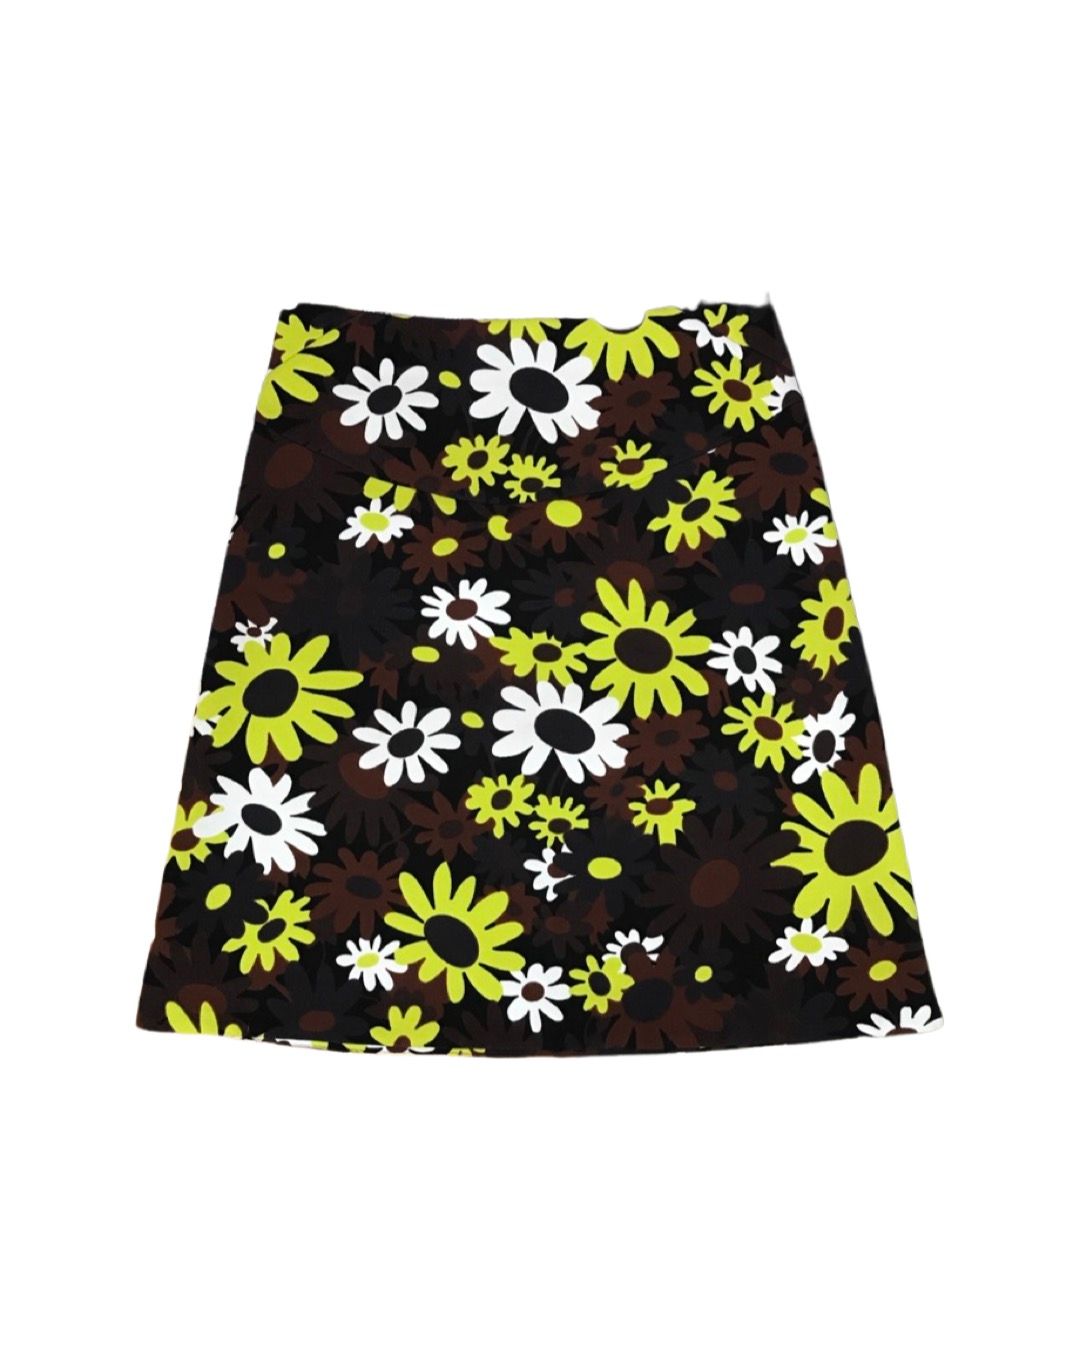 Daisy flower skirt - 1